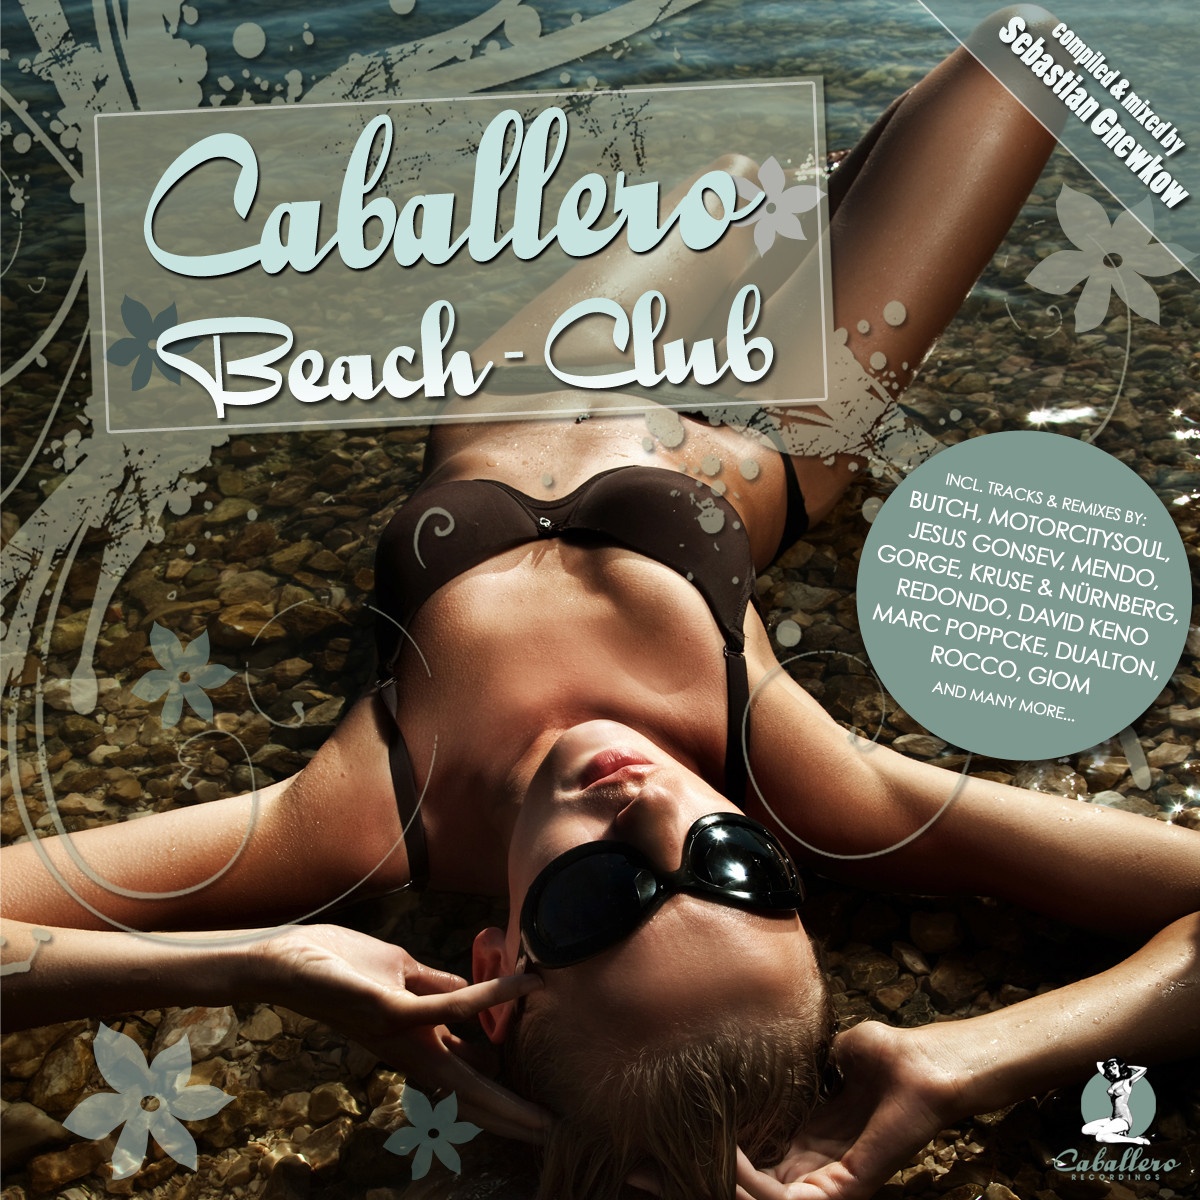 Caballero Beach-Club